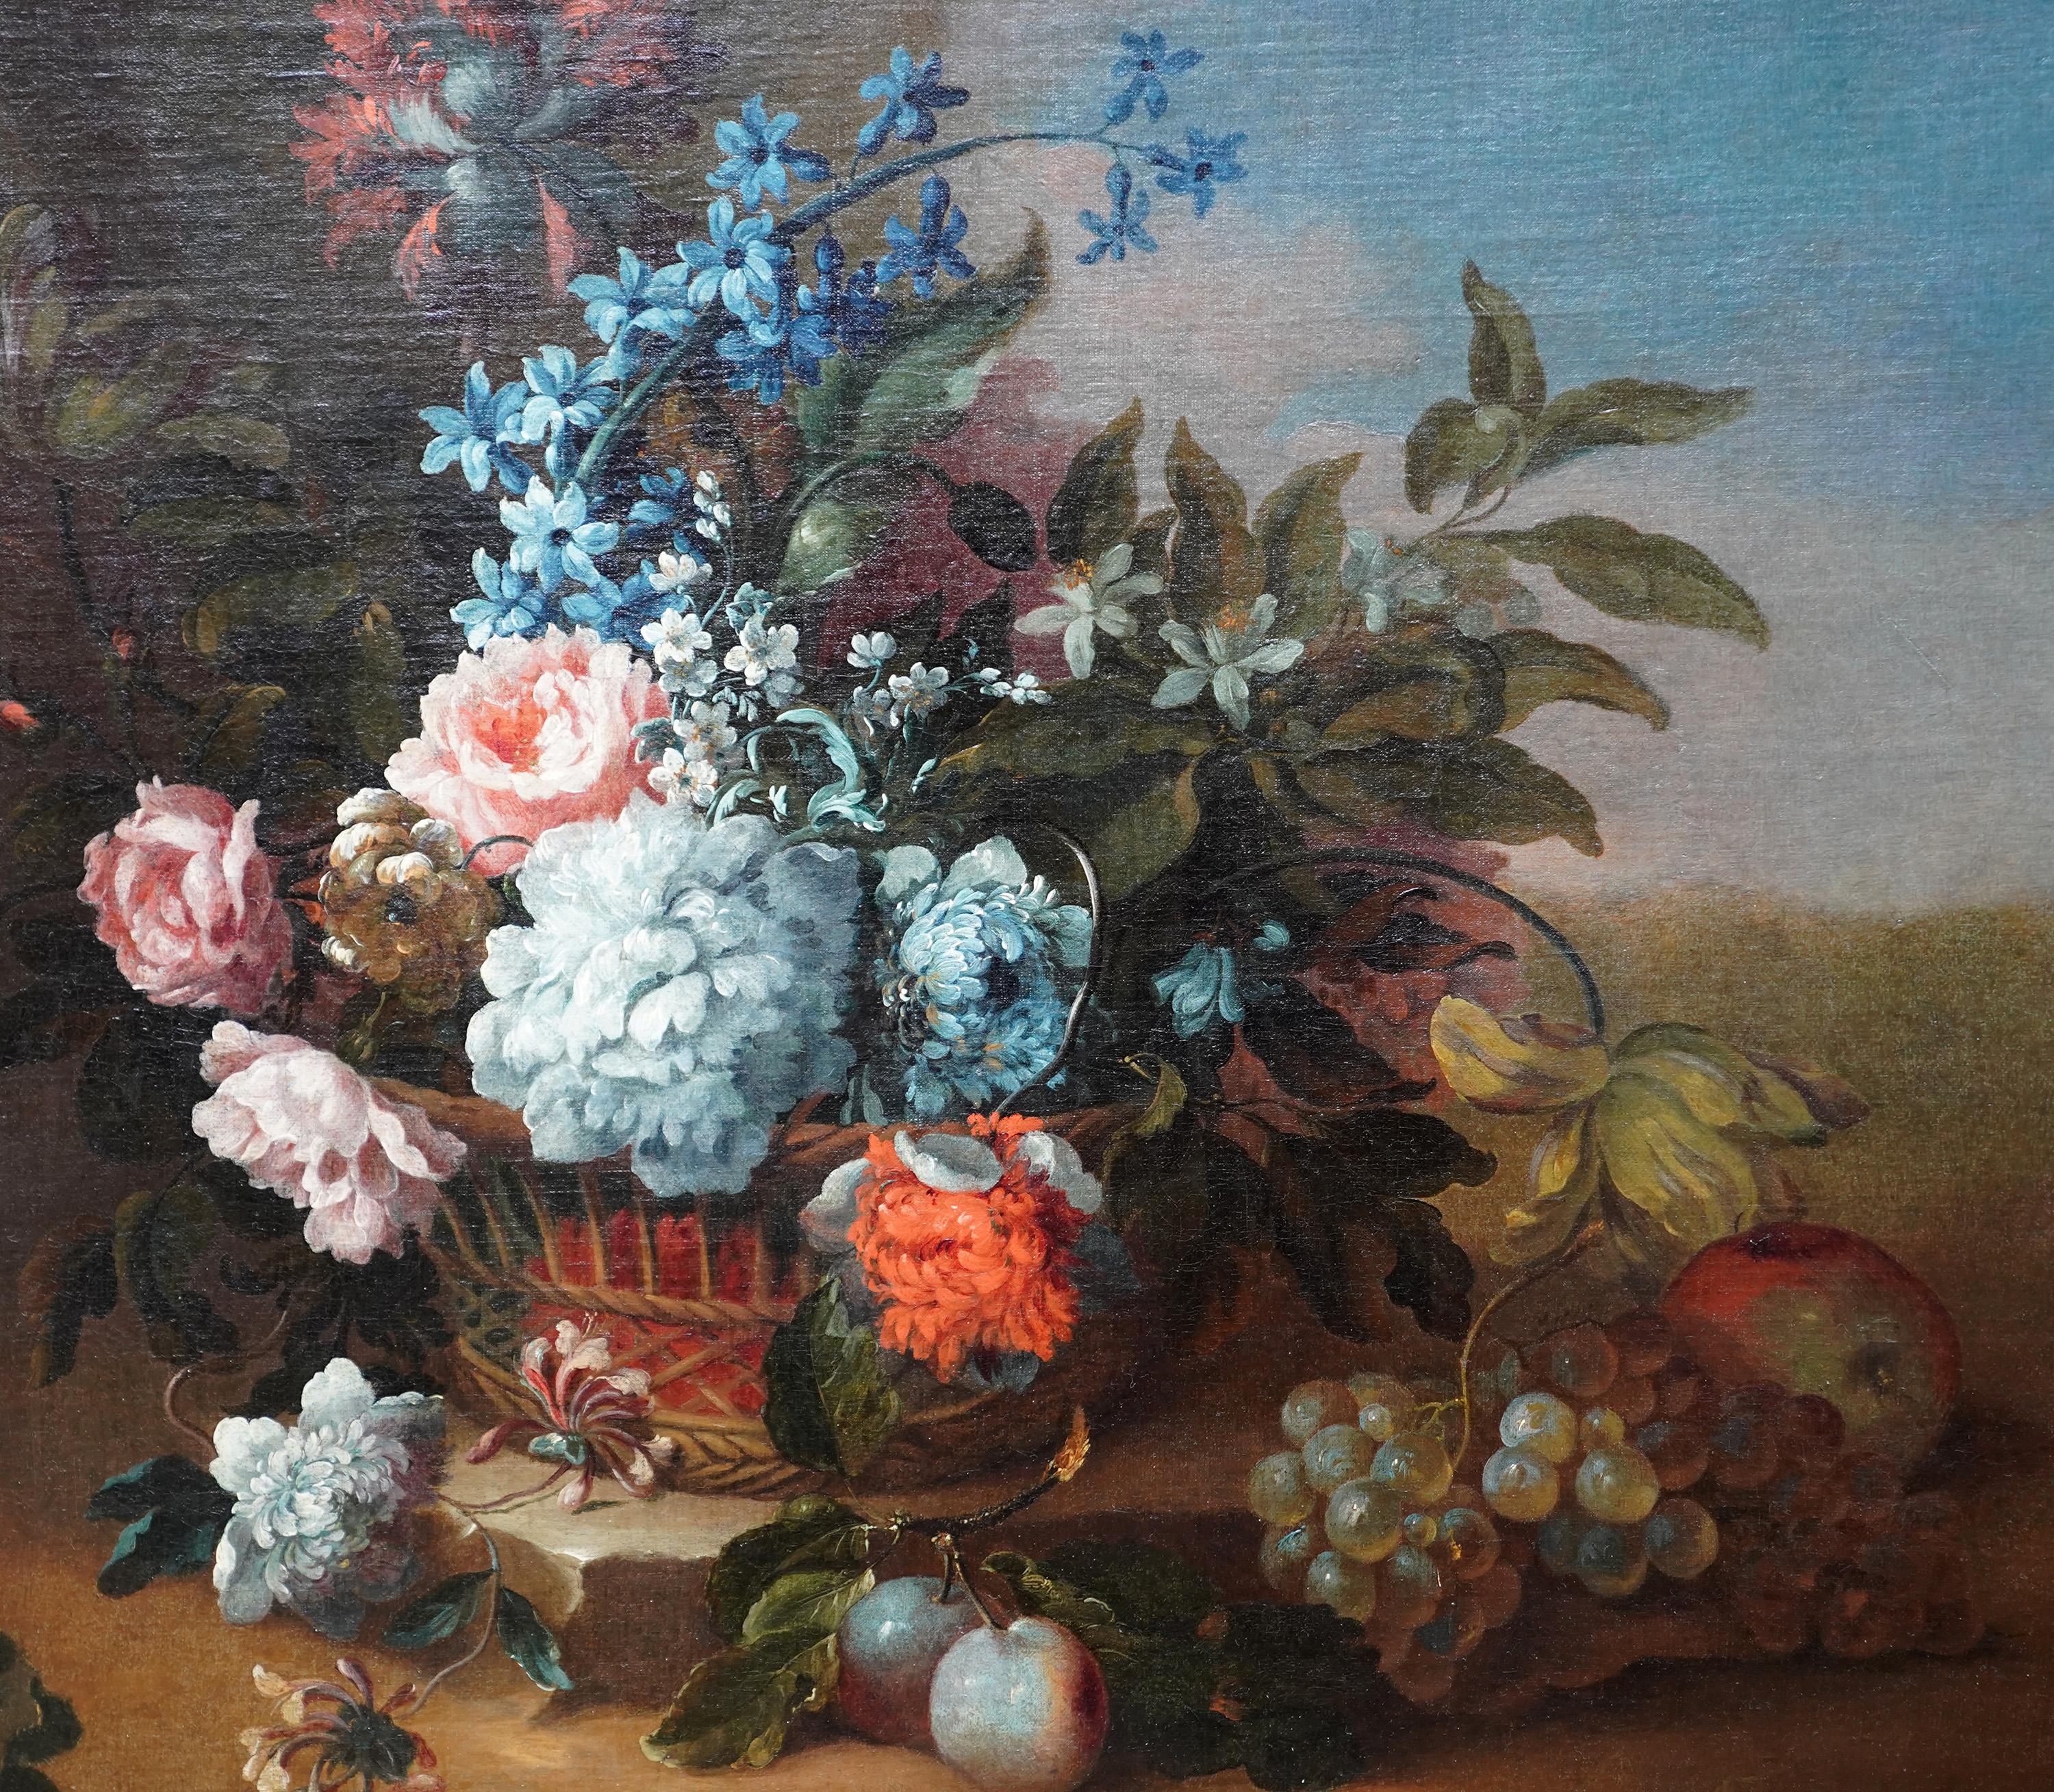 Dieses hübsche florale Ölgemälde aus dem 17. Jahrhundert wird dem Kreis des bekannten französisch-flämischen Künstlers Jean-Baptiste Monnoyer zugeschrieben. Das um 1670 gemalte Stillleben zeigt einen Korb mit Tulpen, Rosen, Orangenblüten, Mohn,